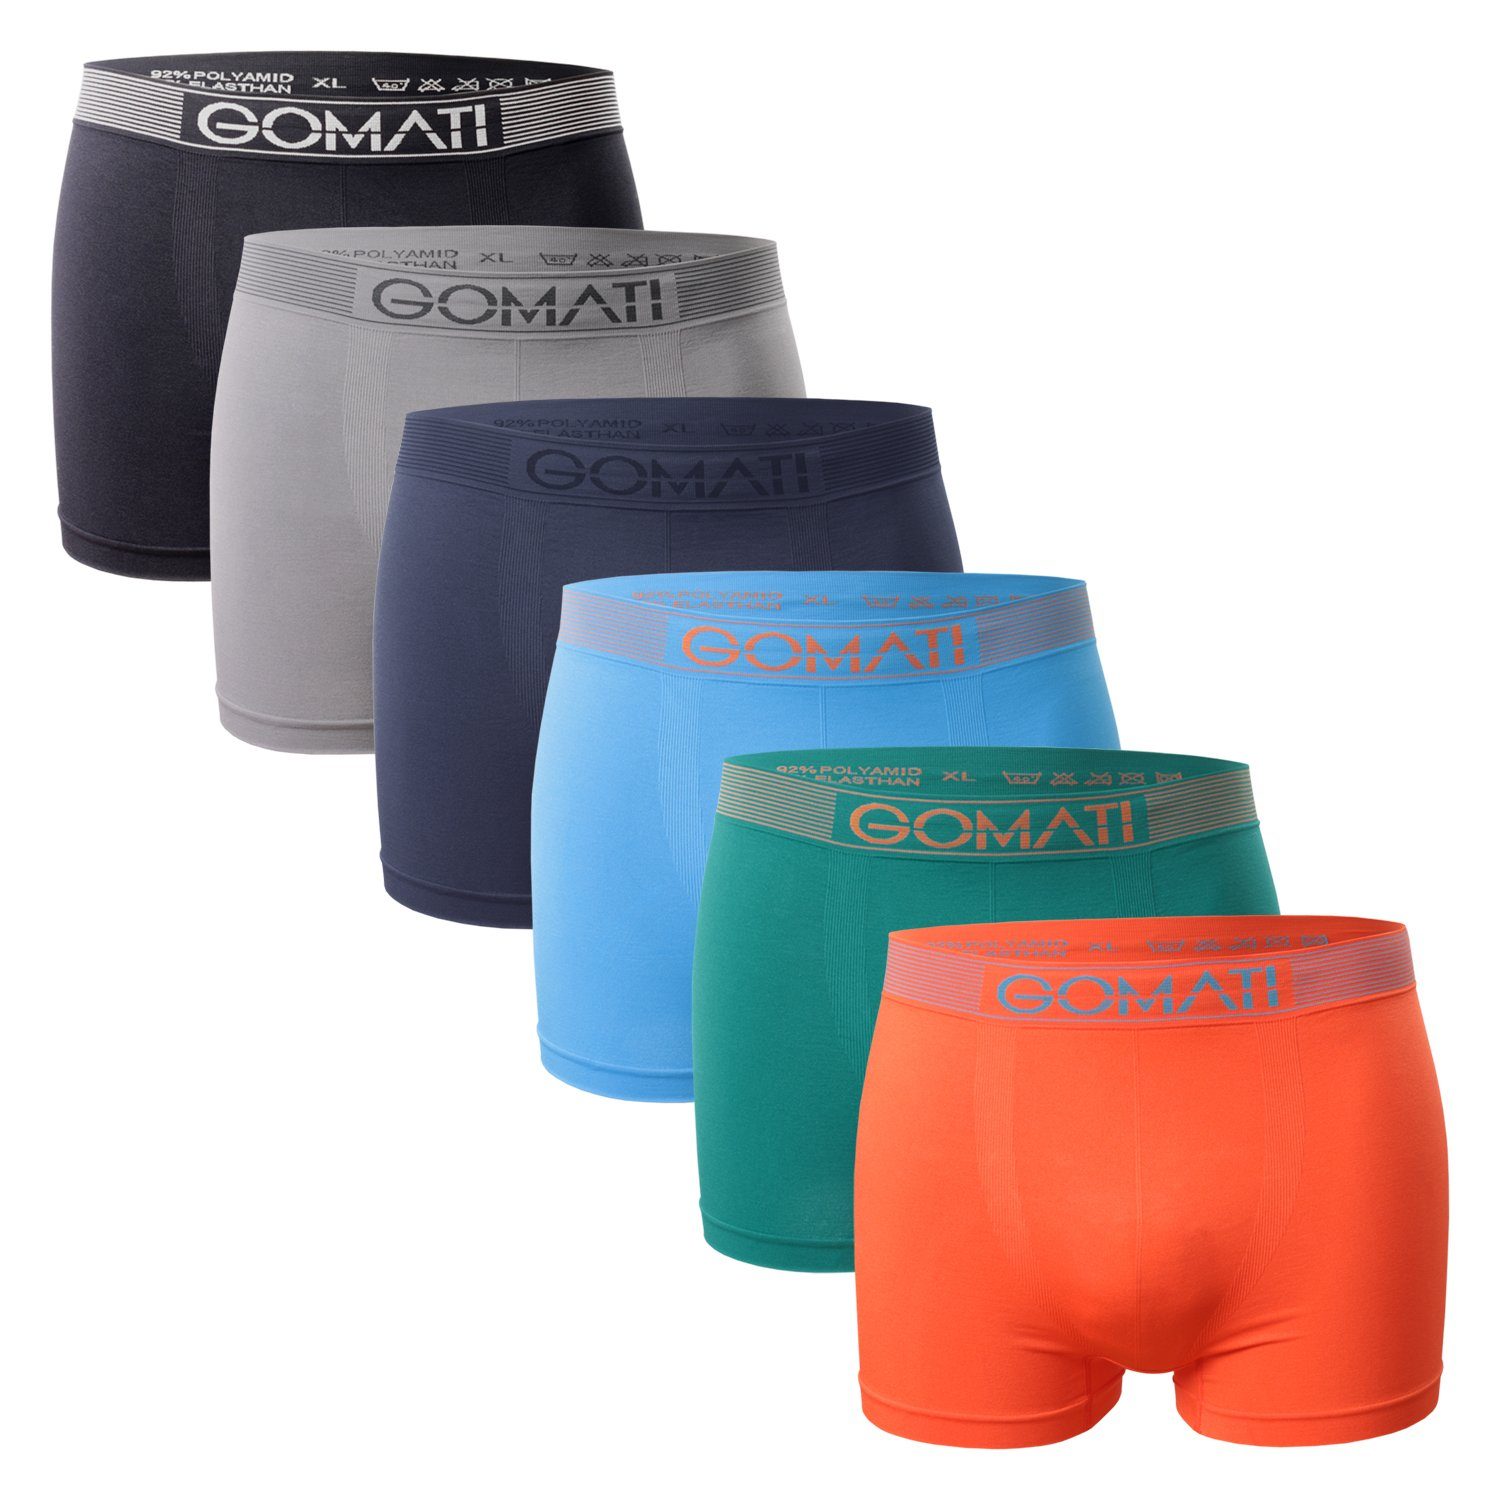 Gomati Boxershorts Herren Seamless Pants (6er Pack) Microfaser-Elasthan Boxershorts Multicolor / Grey Mix